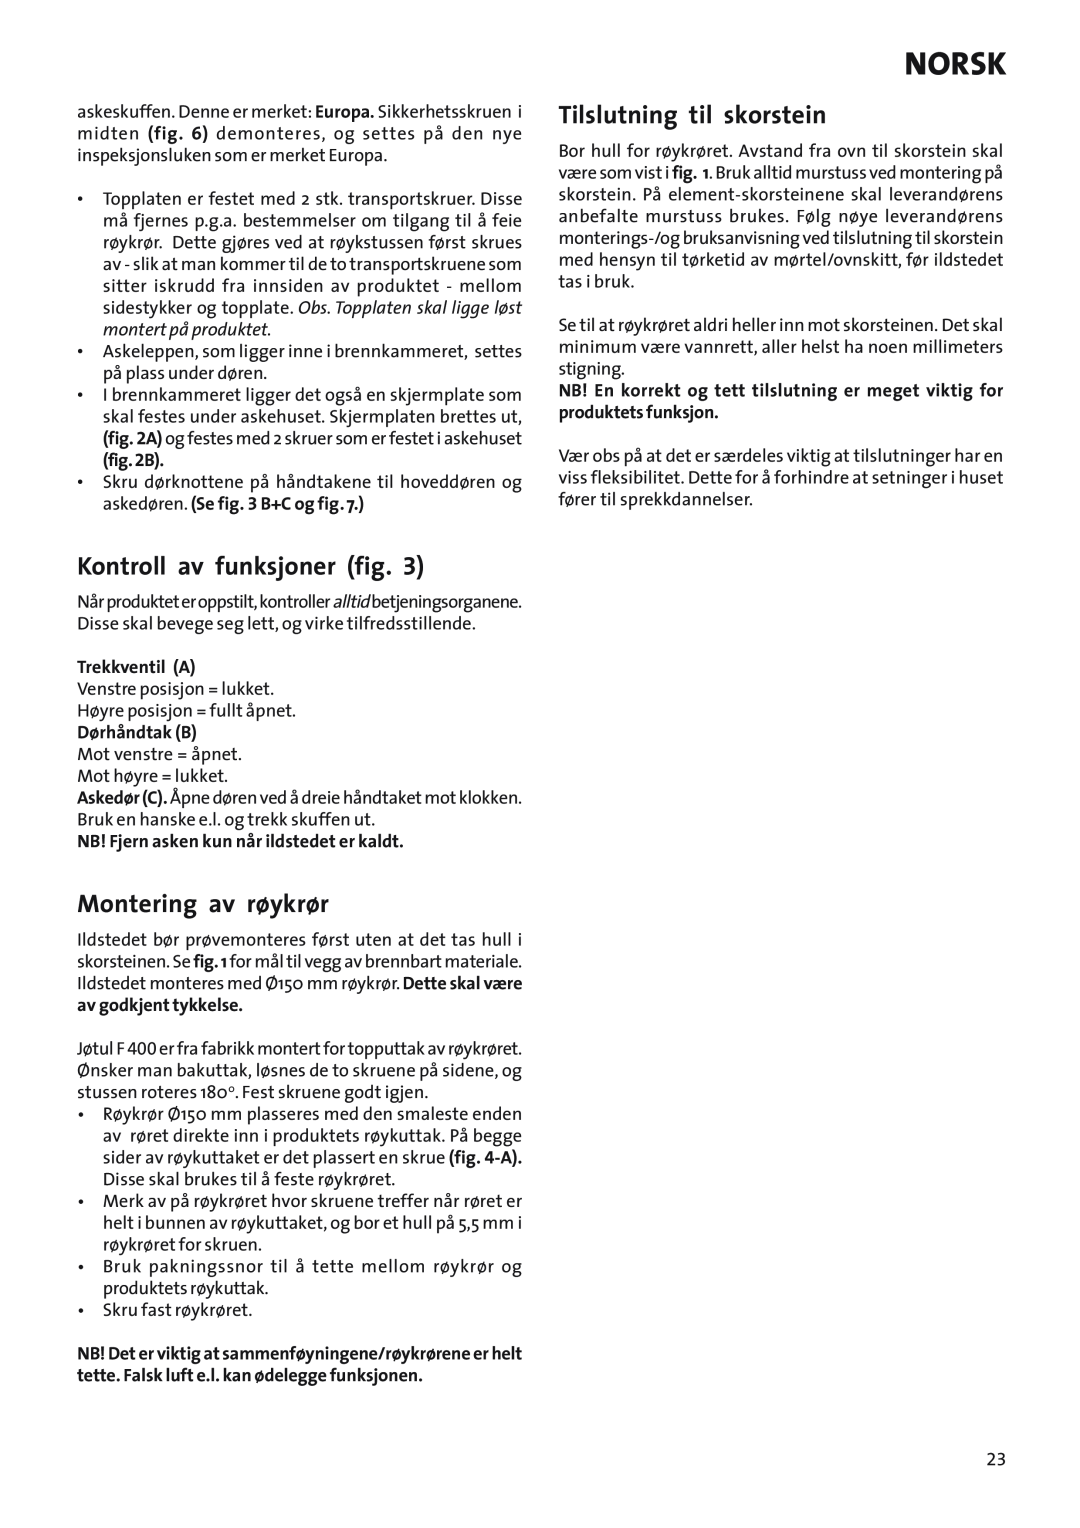 Jotul Woodstove F 400 Kontroll av funksjoner fig, Montering av røykrør, Tilslutning til skorstein, Norsk, B, Trekkventil A 